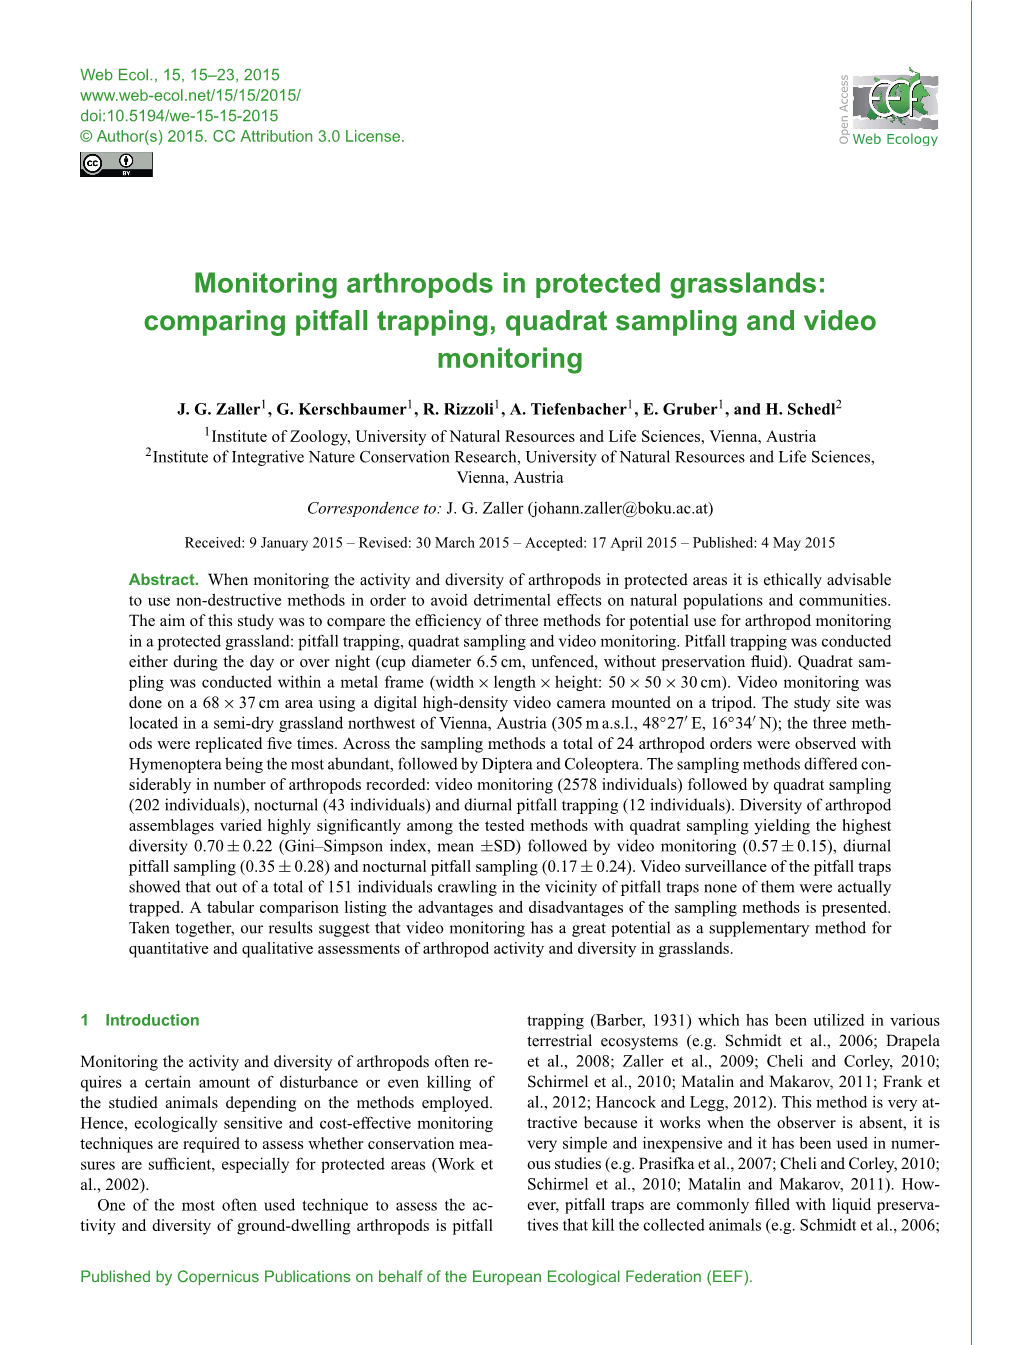 Comparing Pitfall Trapping, Quadrat Sampling and Video Monitoring